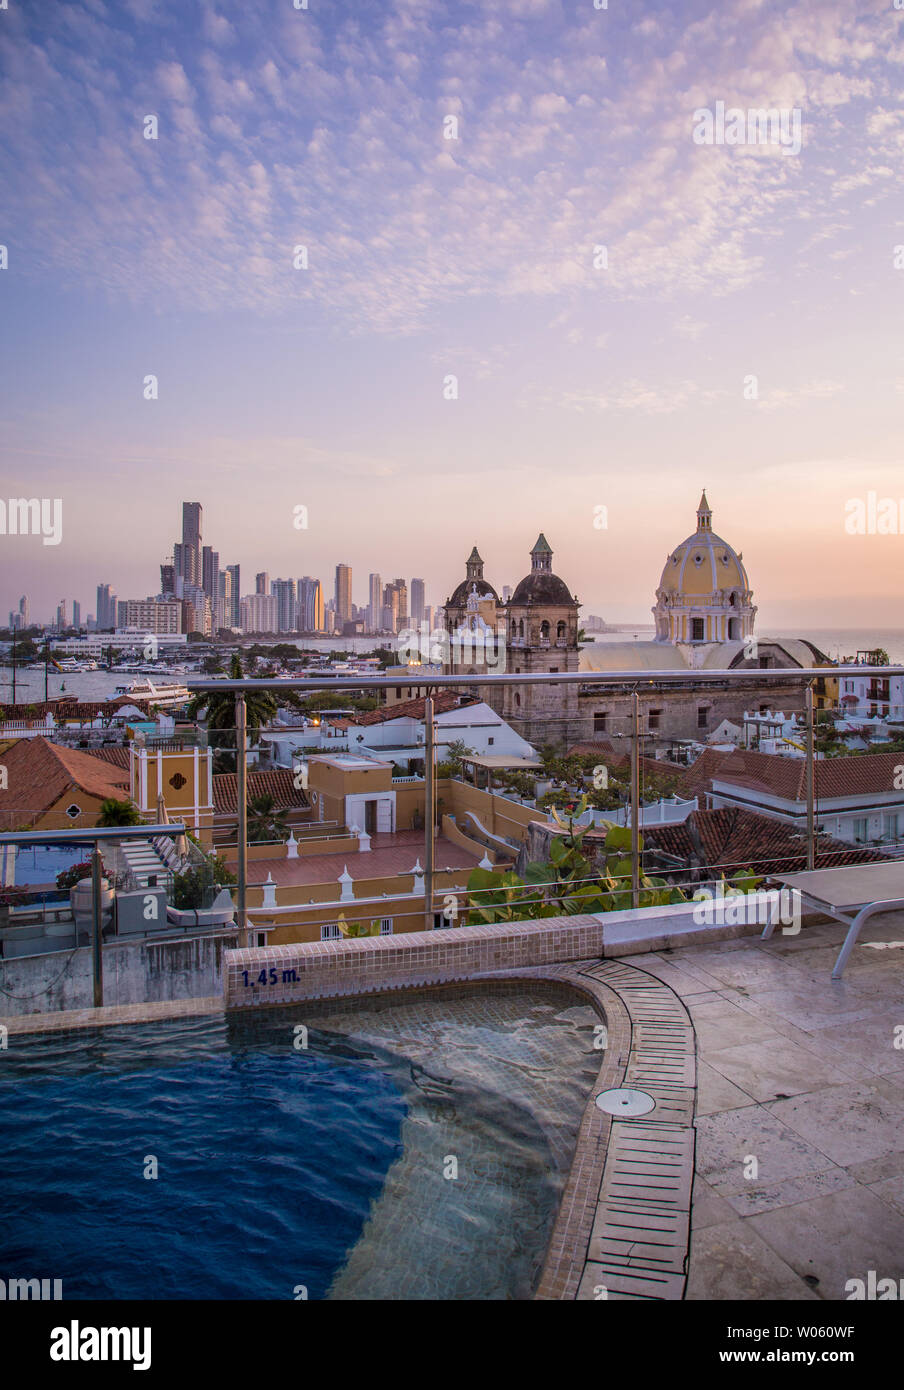 El sol se pone por encima de los tejados y el horizonte de la ciudad de Cartagena de Indias, Colombia - vista desde la terraza de la piscina y el bar de uno de los muchos hoteles de lujo del centro. Foto de stock